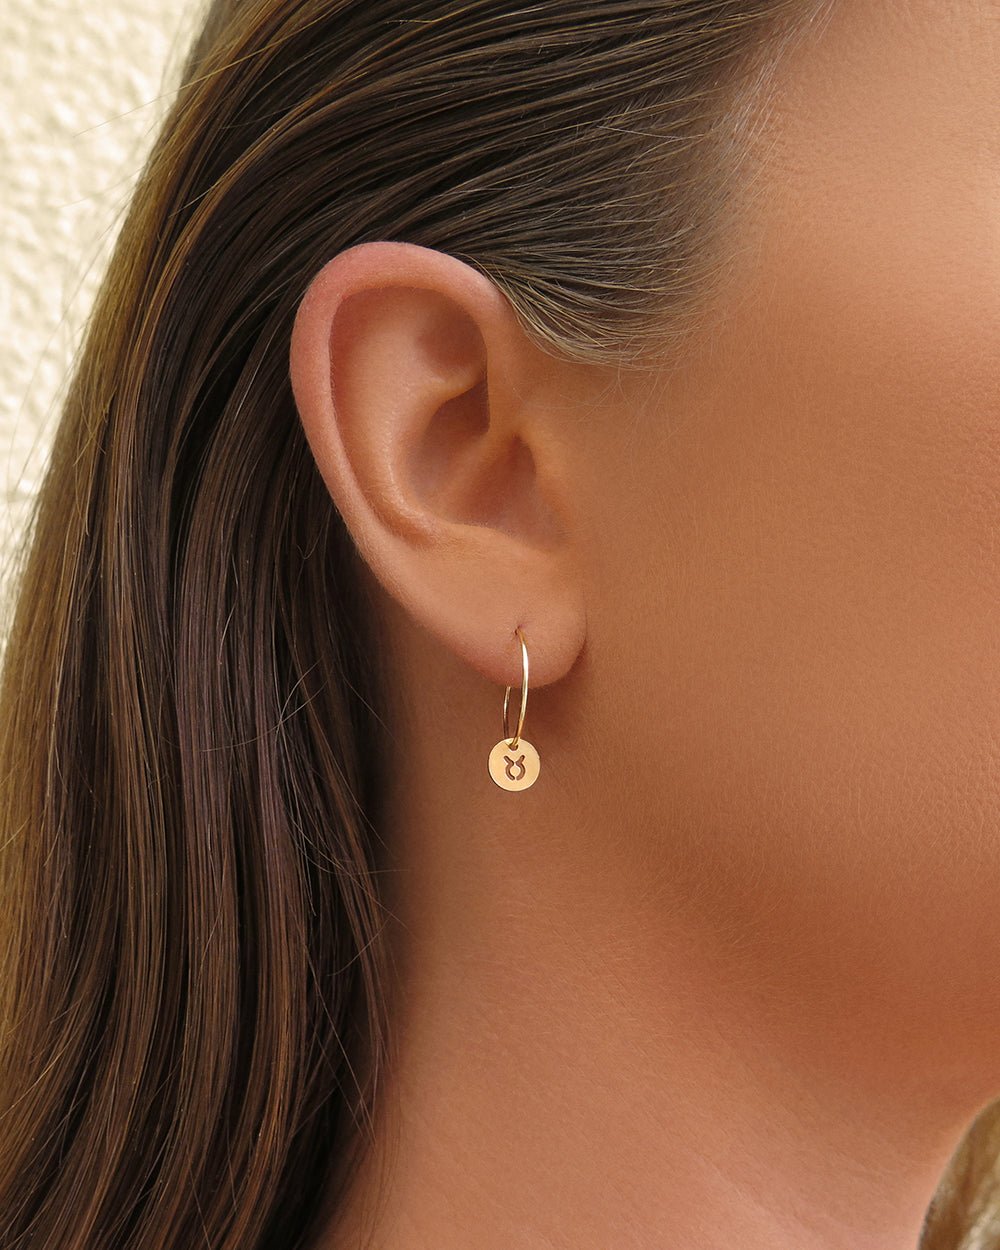 ZODIAC HOOP EARRINGS - The Littl - 14k Yellow Gold Fill - Earrings